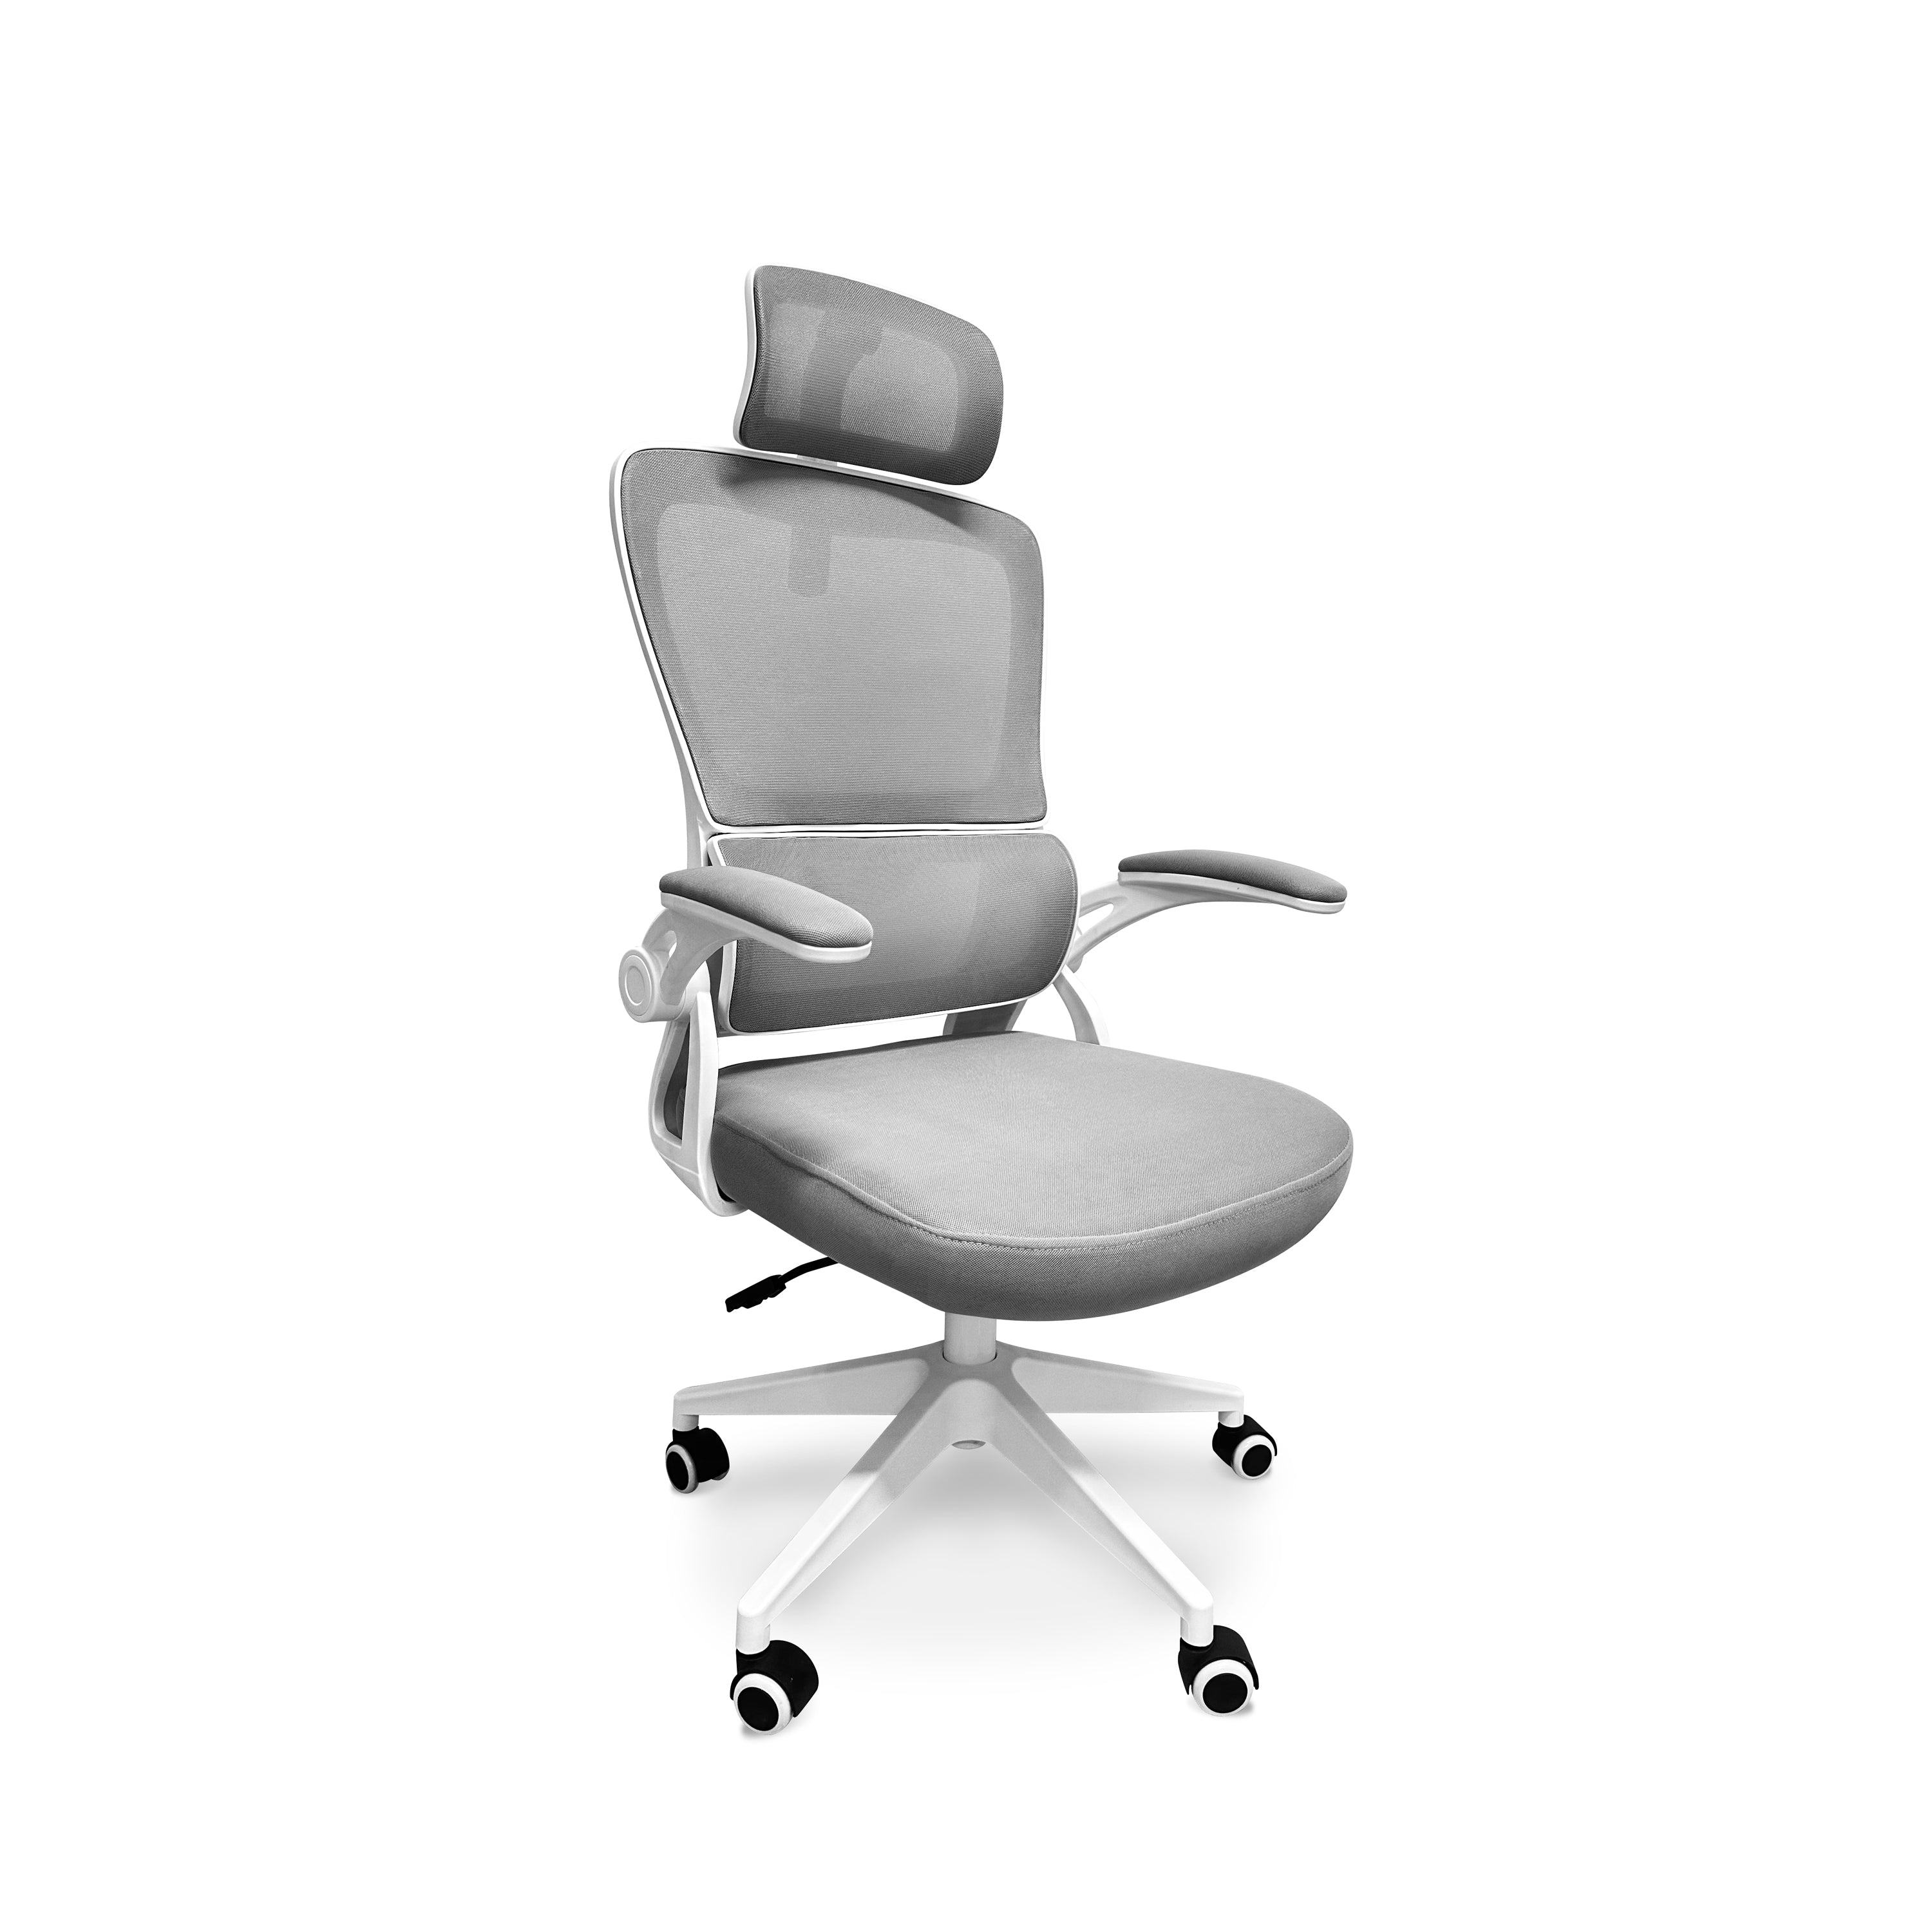 Lyn - Sedia da uffico ergonomica ad altezza regolabile, dotata di poggiatesta, imbottitura lombare e ruote girevoli - colore bianco e grigio